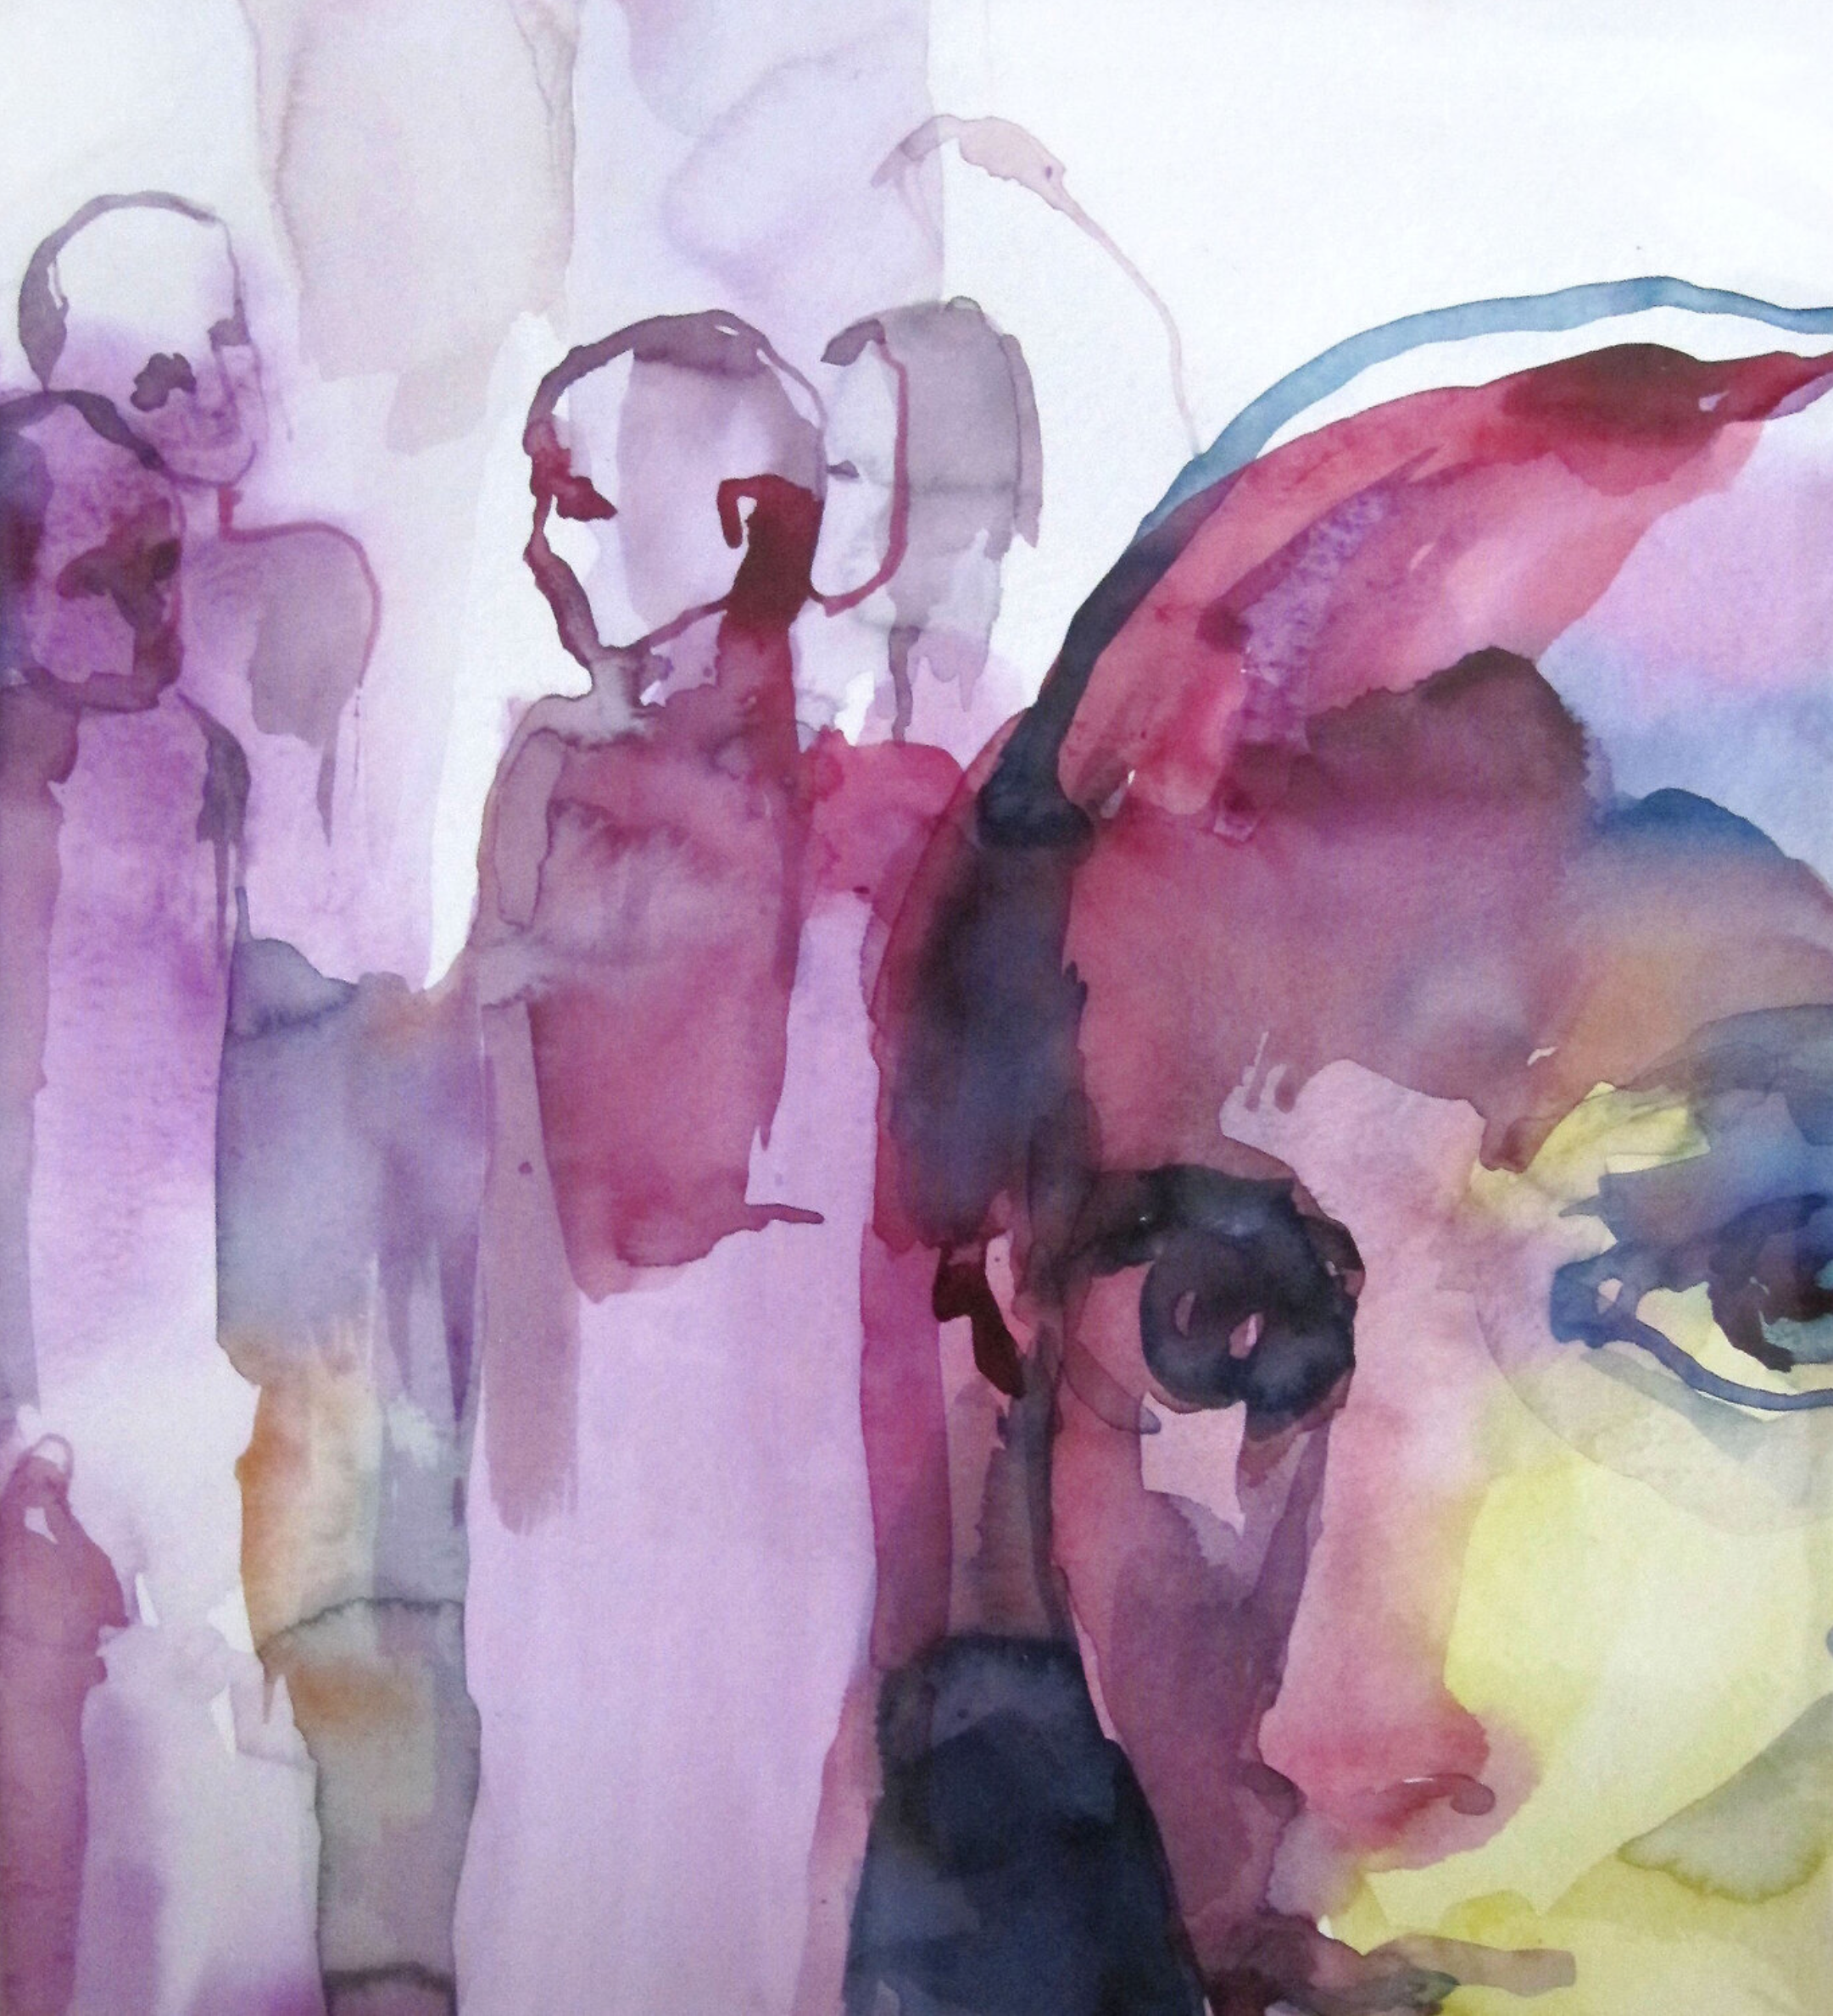 Sylvia Baldeva's "Complot" Gemälde zeigt eine Lebensszene, Figuren, Vordergrundgesicht, Portrait, Silhouetten. Farben überwiegend Violett. 